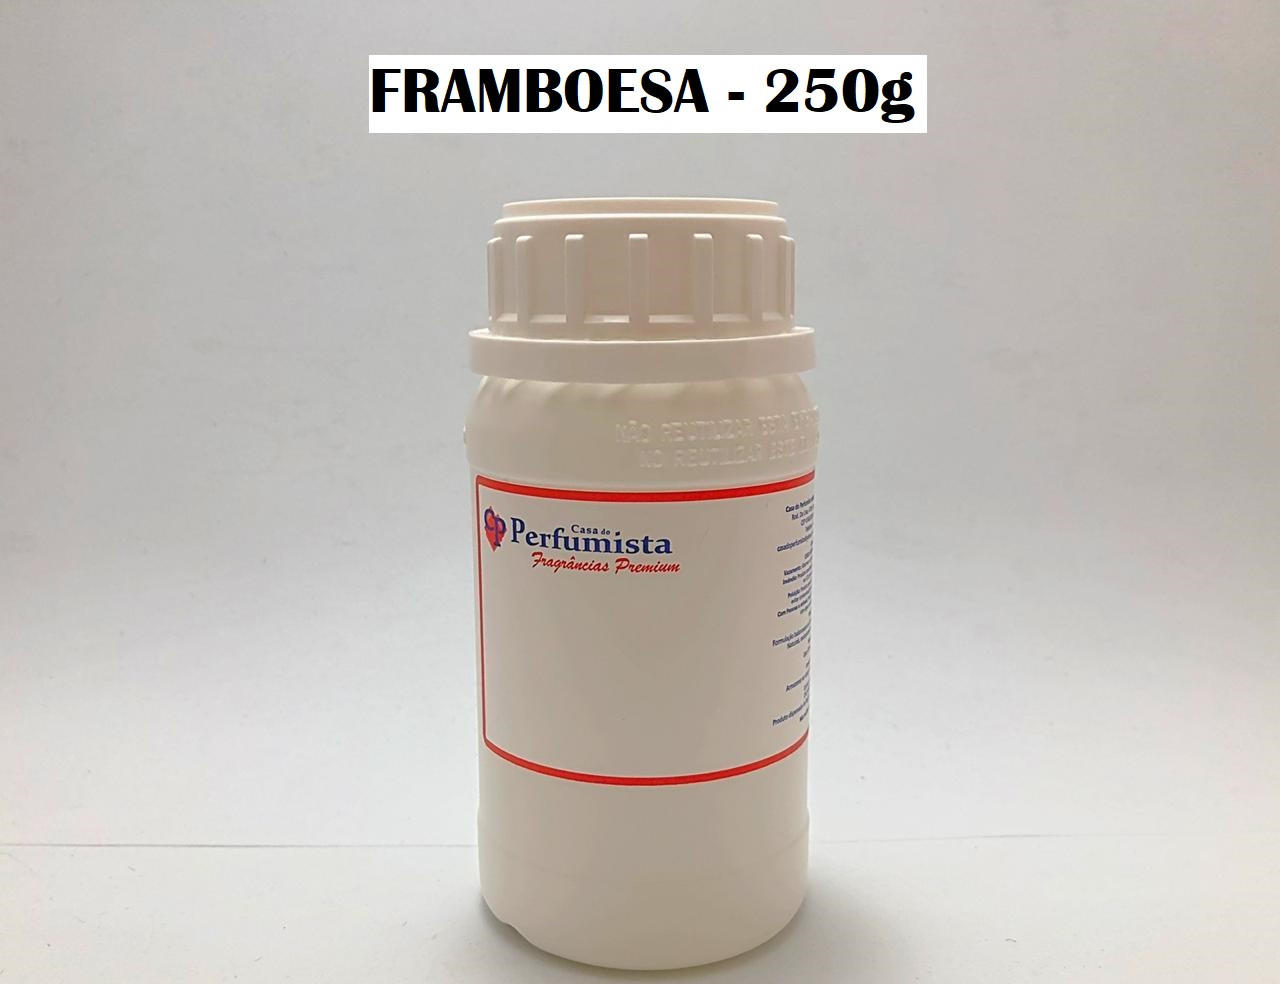 FRAMBOESA - 250g